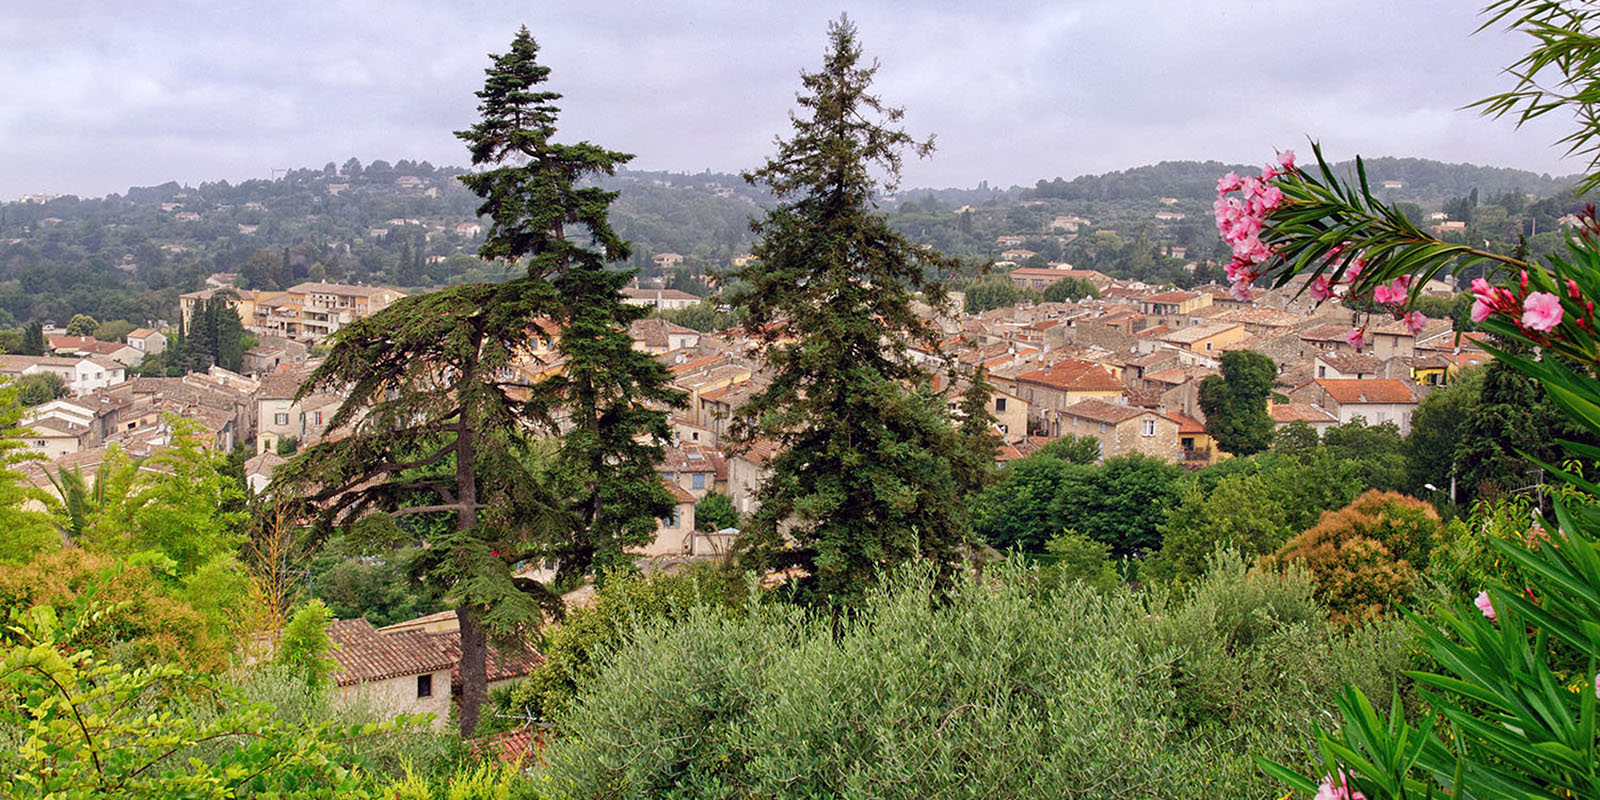 The old village nestled amid lush vegetation